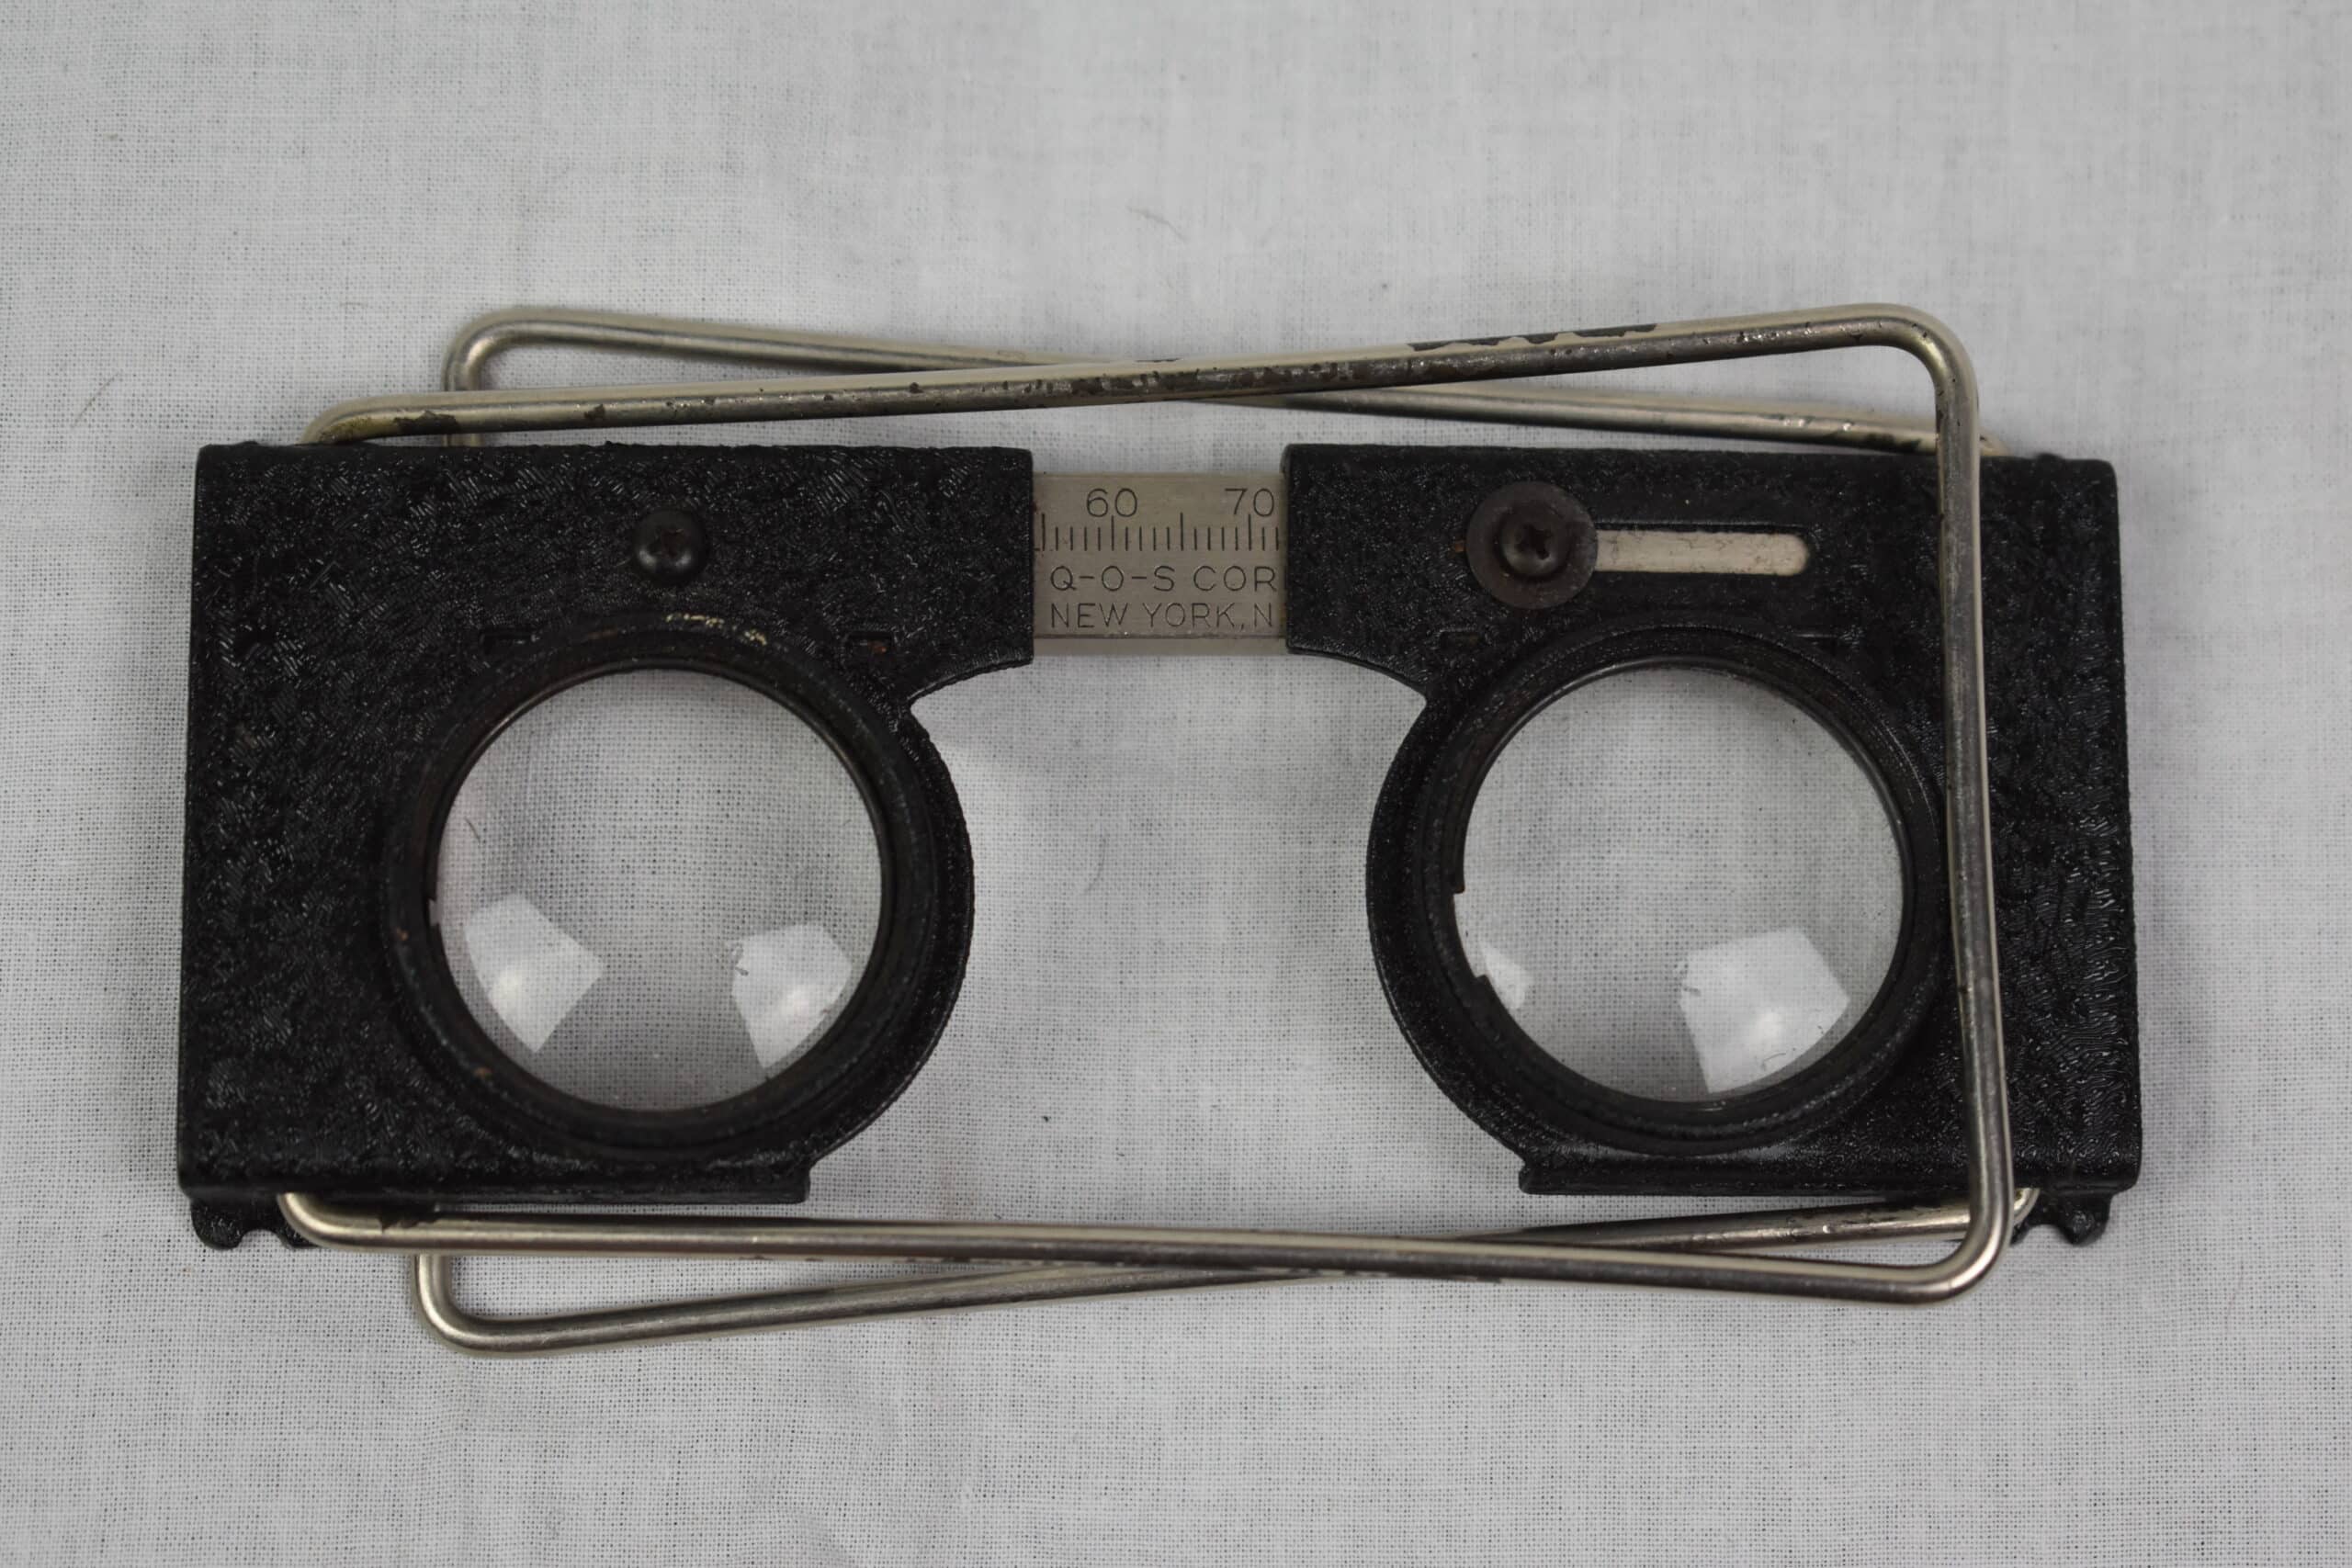 (Français) Lunette de lecture stéréoscope, Folding Aerial Photo Map Stereoscope Reader Glasses